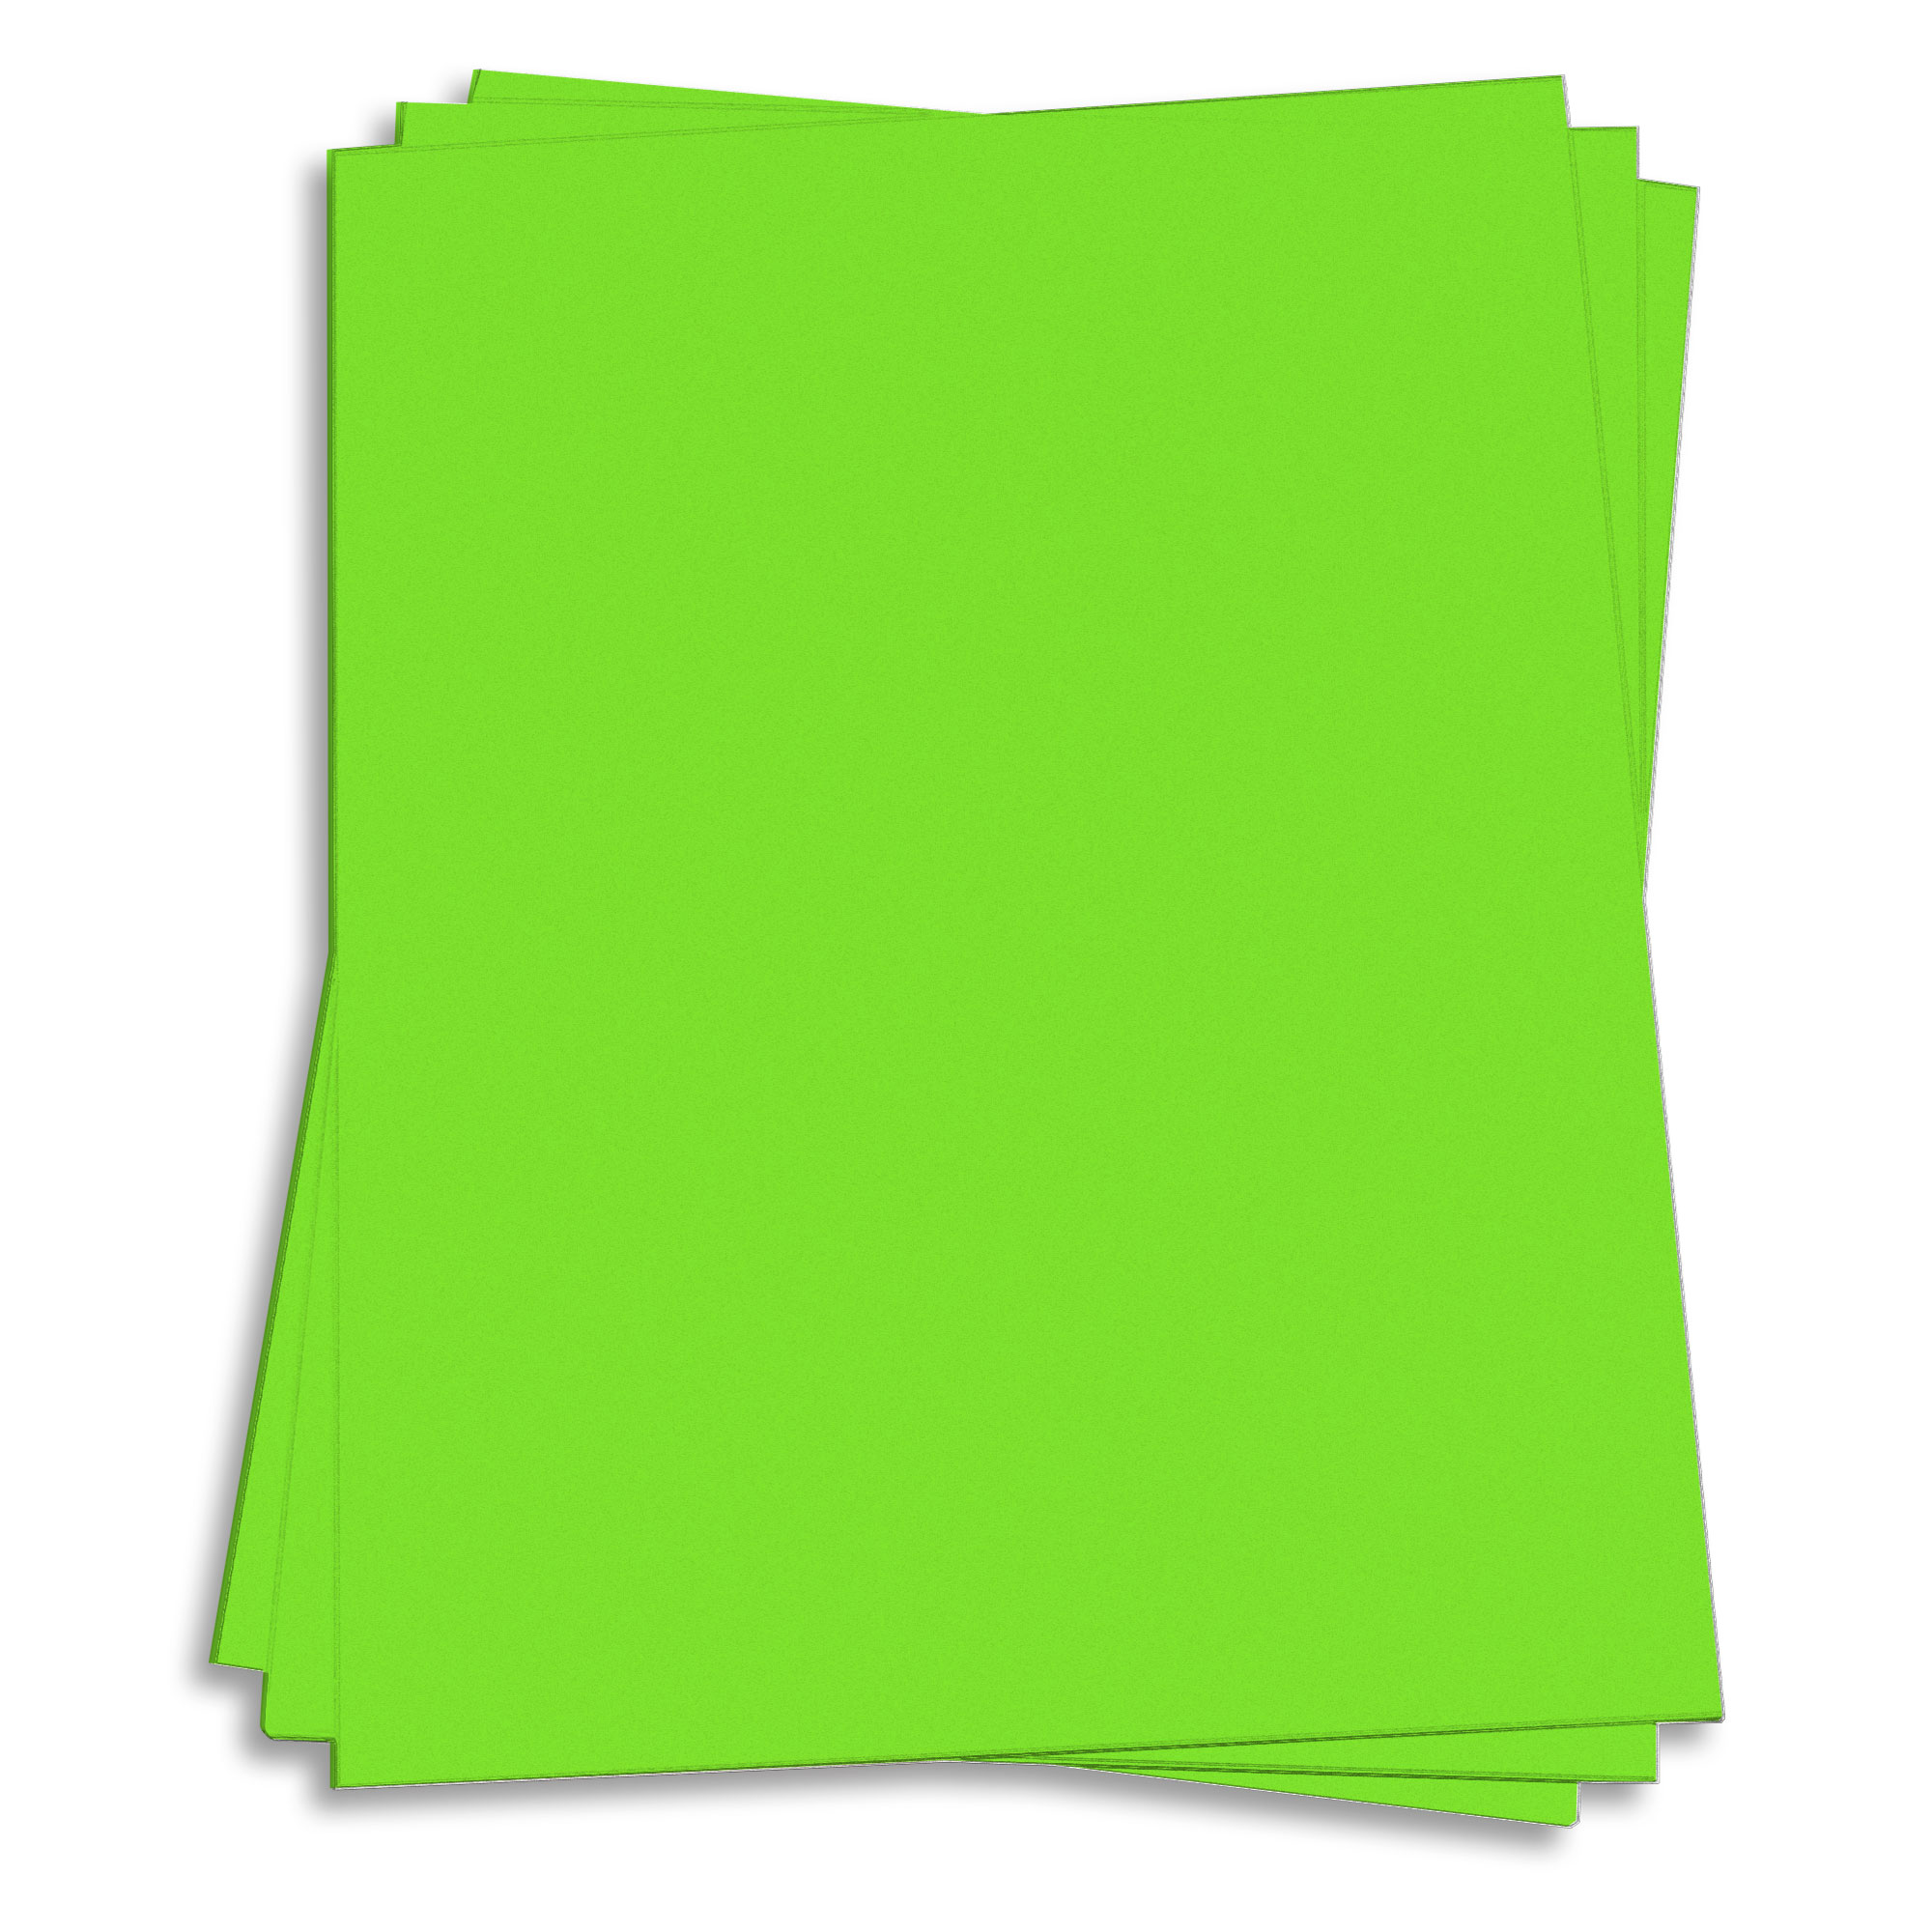 Martian Green Card Stock - 8 1/2 x 11 65lb Cover